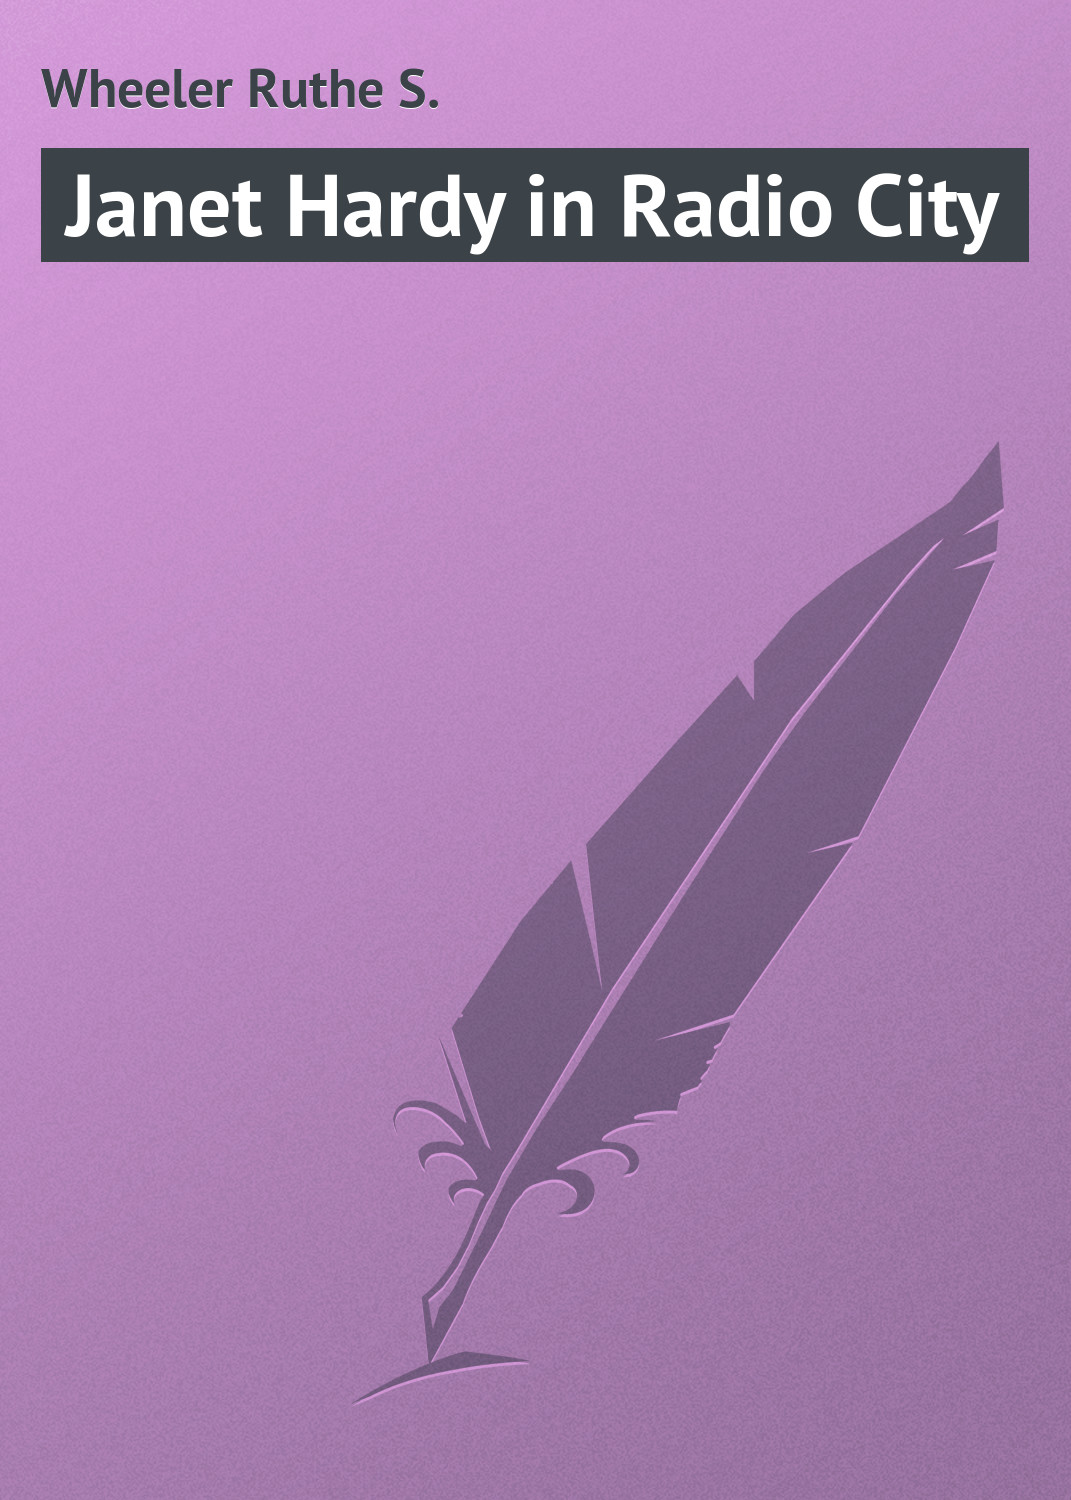 Книга Janet Hardy in Radio City из серии , созданная Ruthe Wheeler, может относится к жанру Зарубежная классика, Зарубежные детские книги. Стоимость электронной книги Janet Hardy in Radio City с идентификатором 23166403 составляет 5.99 руб.